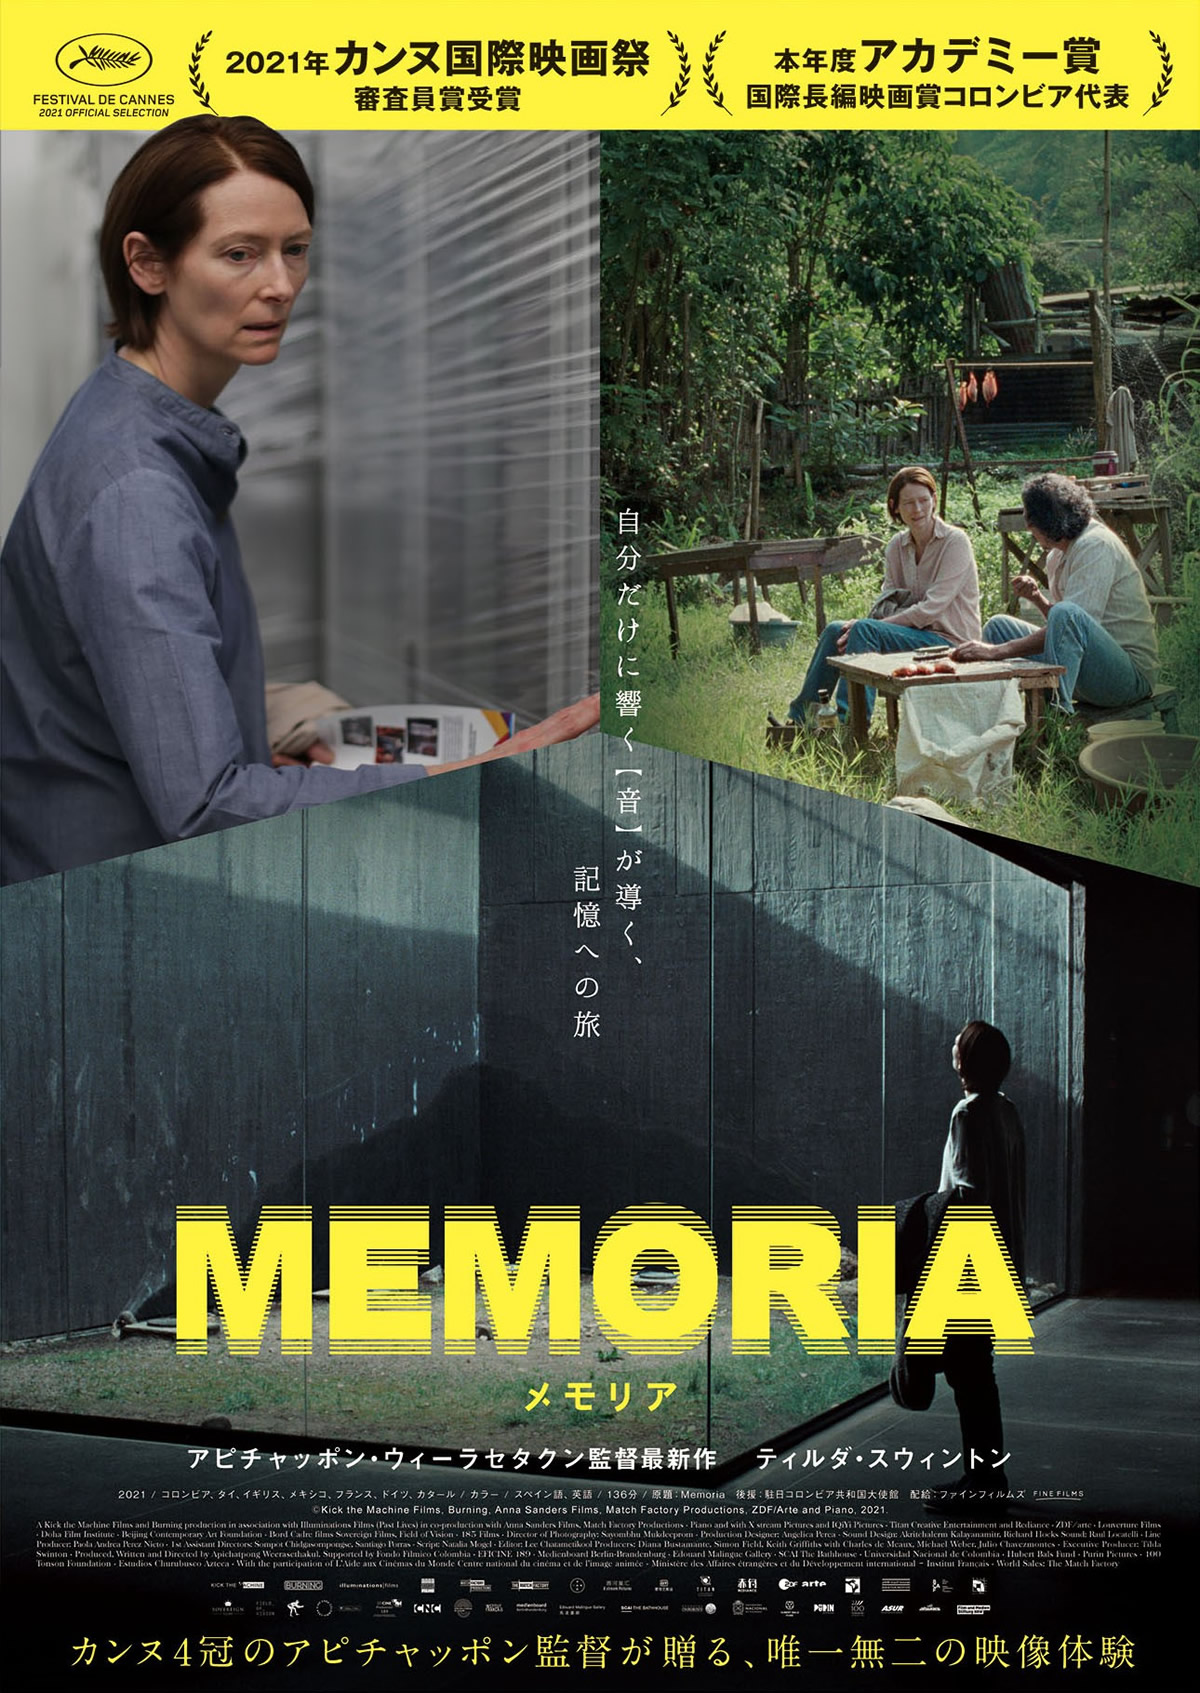 アピチャッポン・ウィーラセタクン監督「MEMORIA メモリア」Blu-rayは予約受注生産